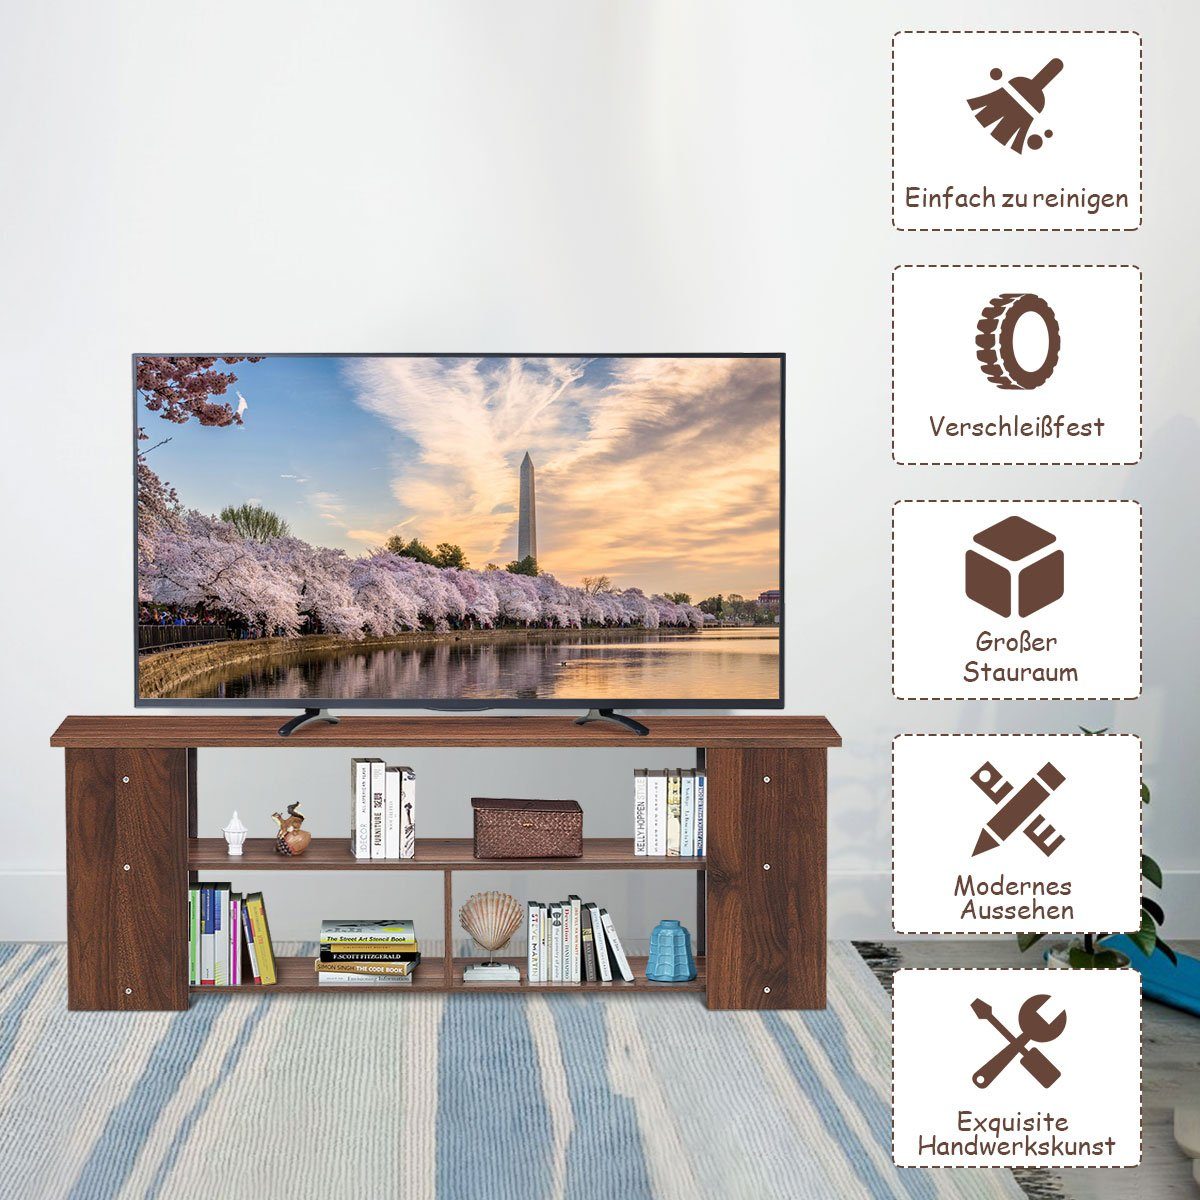 COSTWAY TV-Schrank Fernsehschrank 110cm Kaffee breit 3-stufig